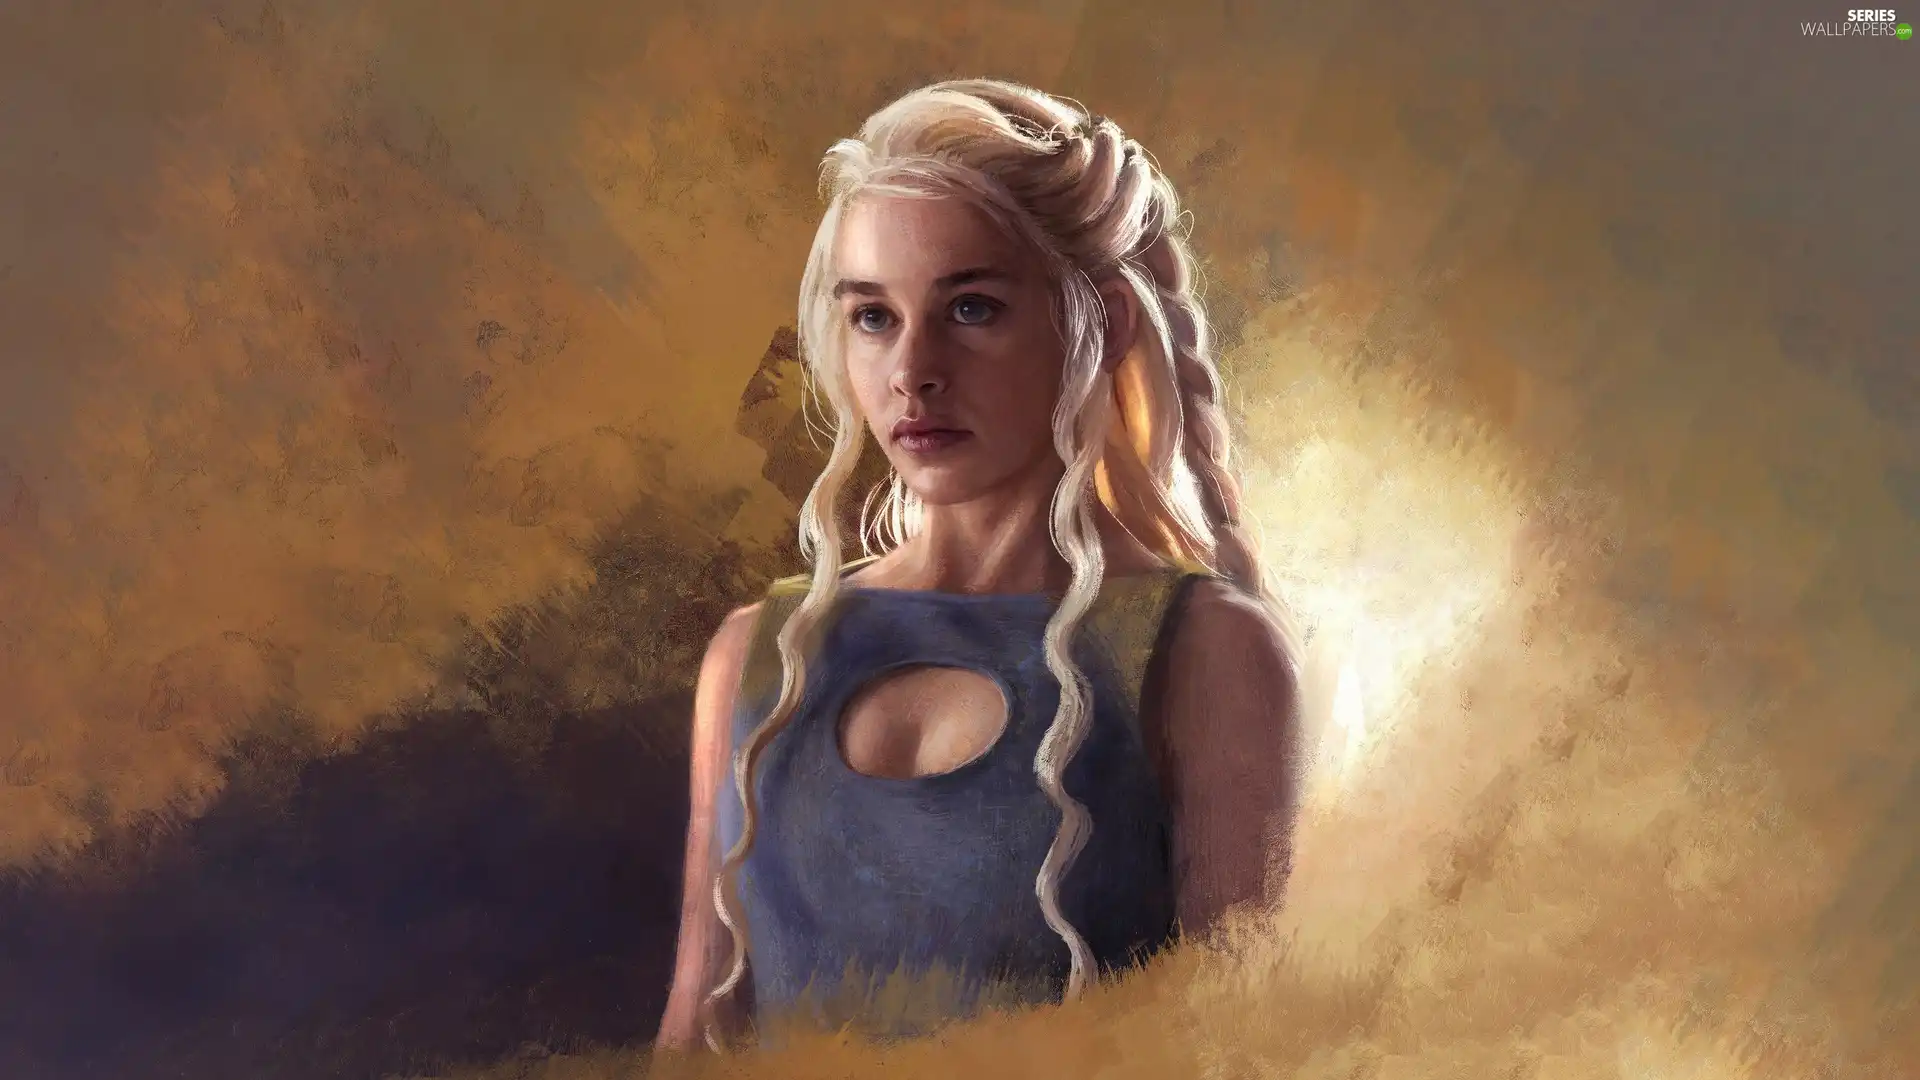 Game Of Thrones, series, actress, Emilia Clarke, Daenerys Targaryen, Game of Thrones